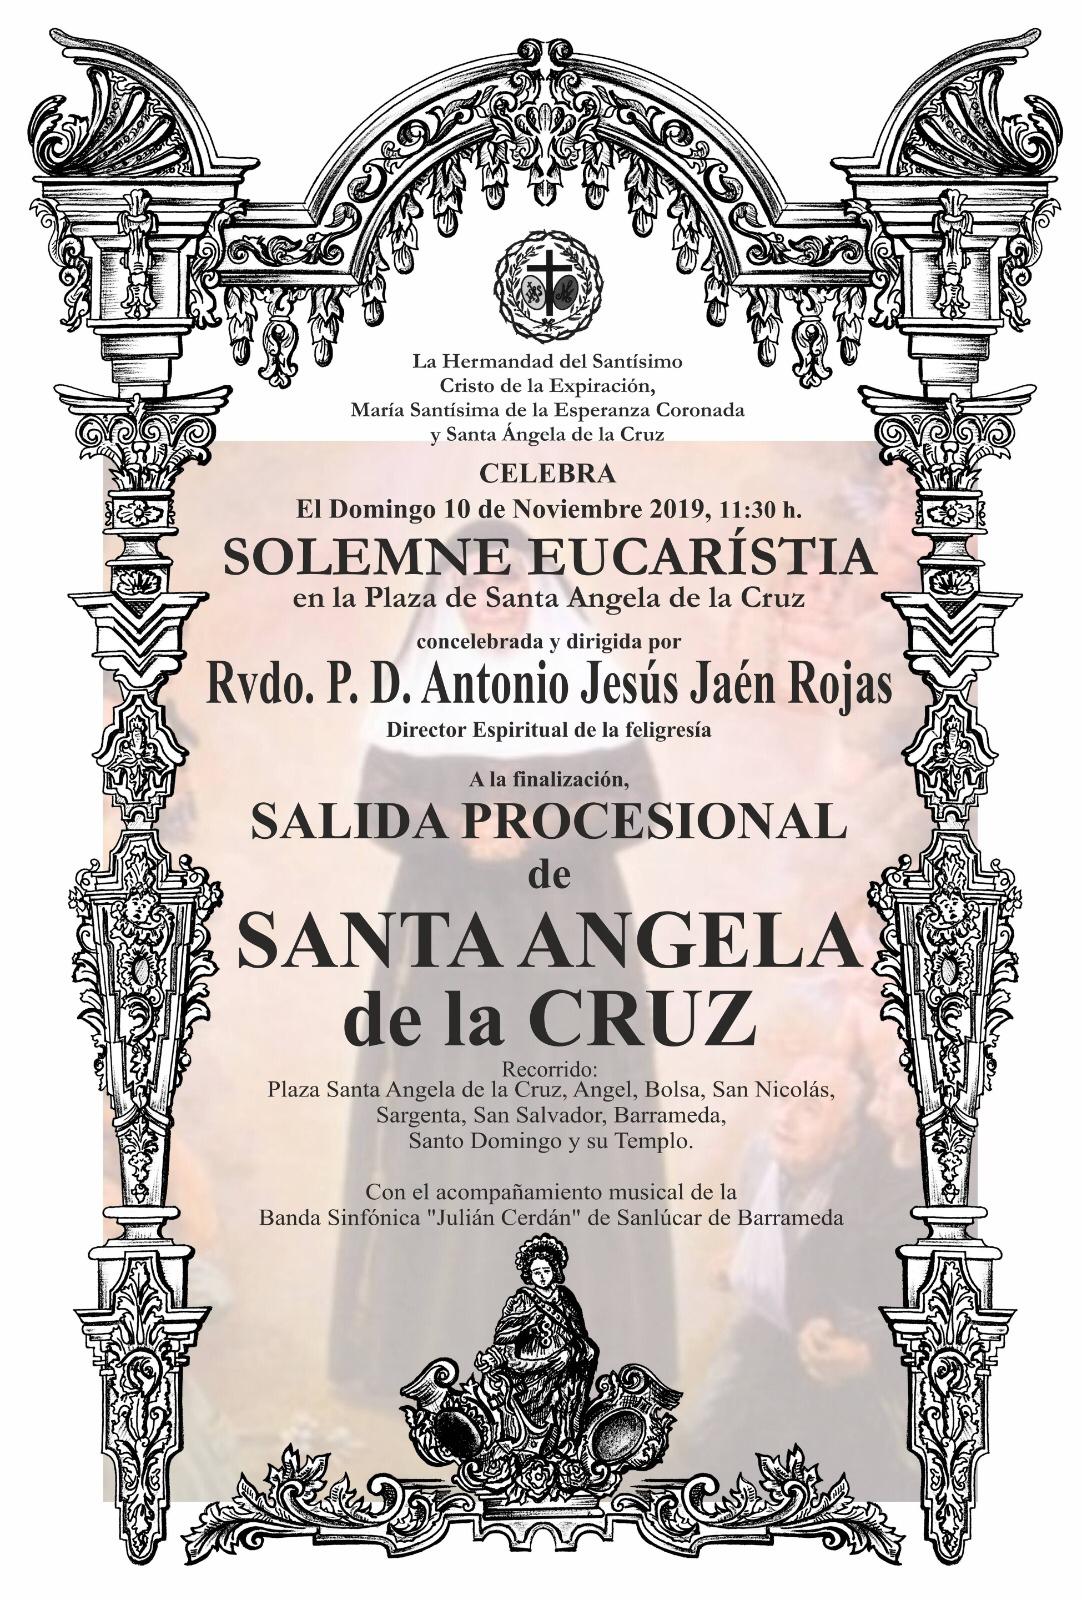 Misa de Campaa y Salida Procesional de Santa Angela de la Cruz